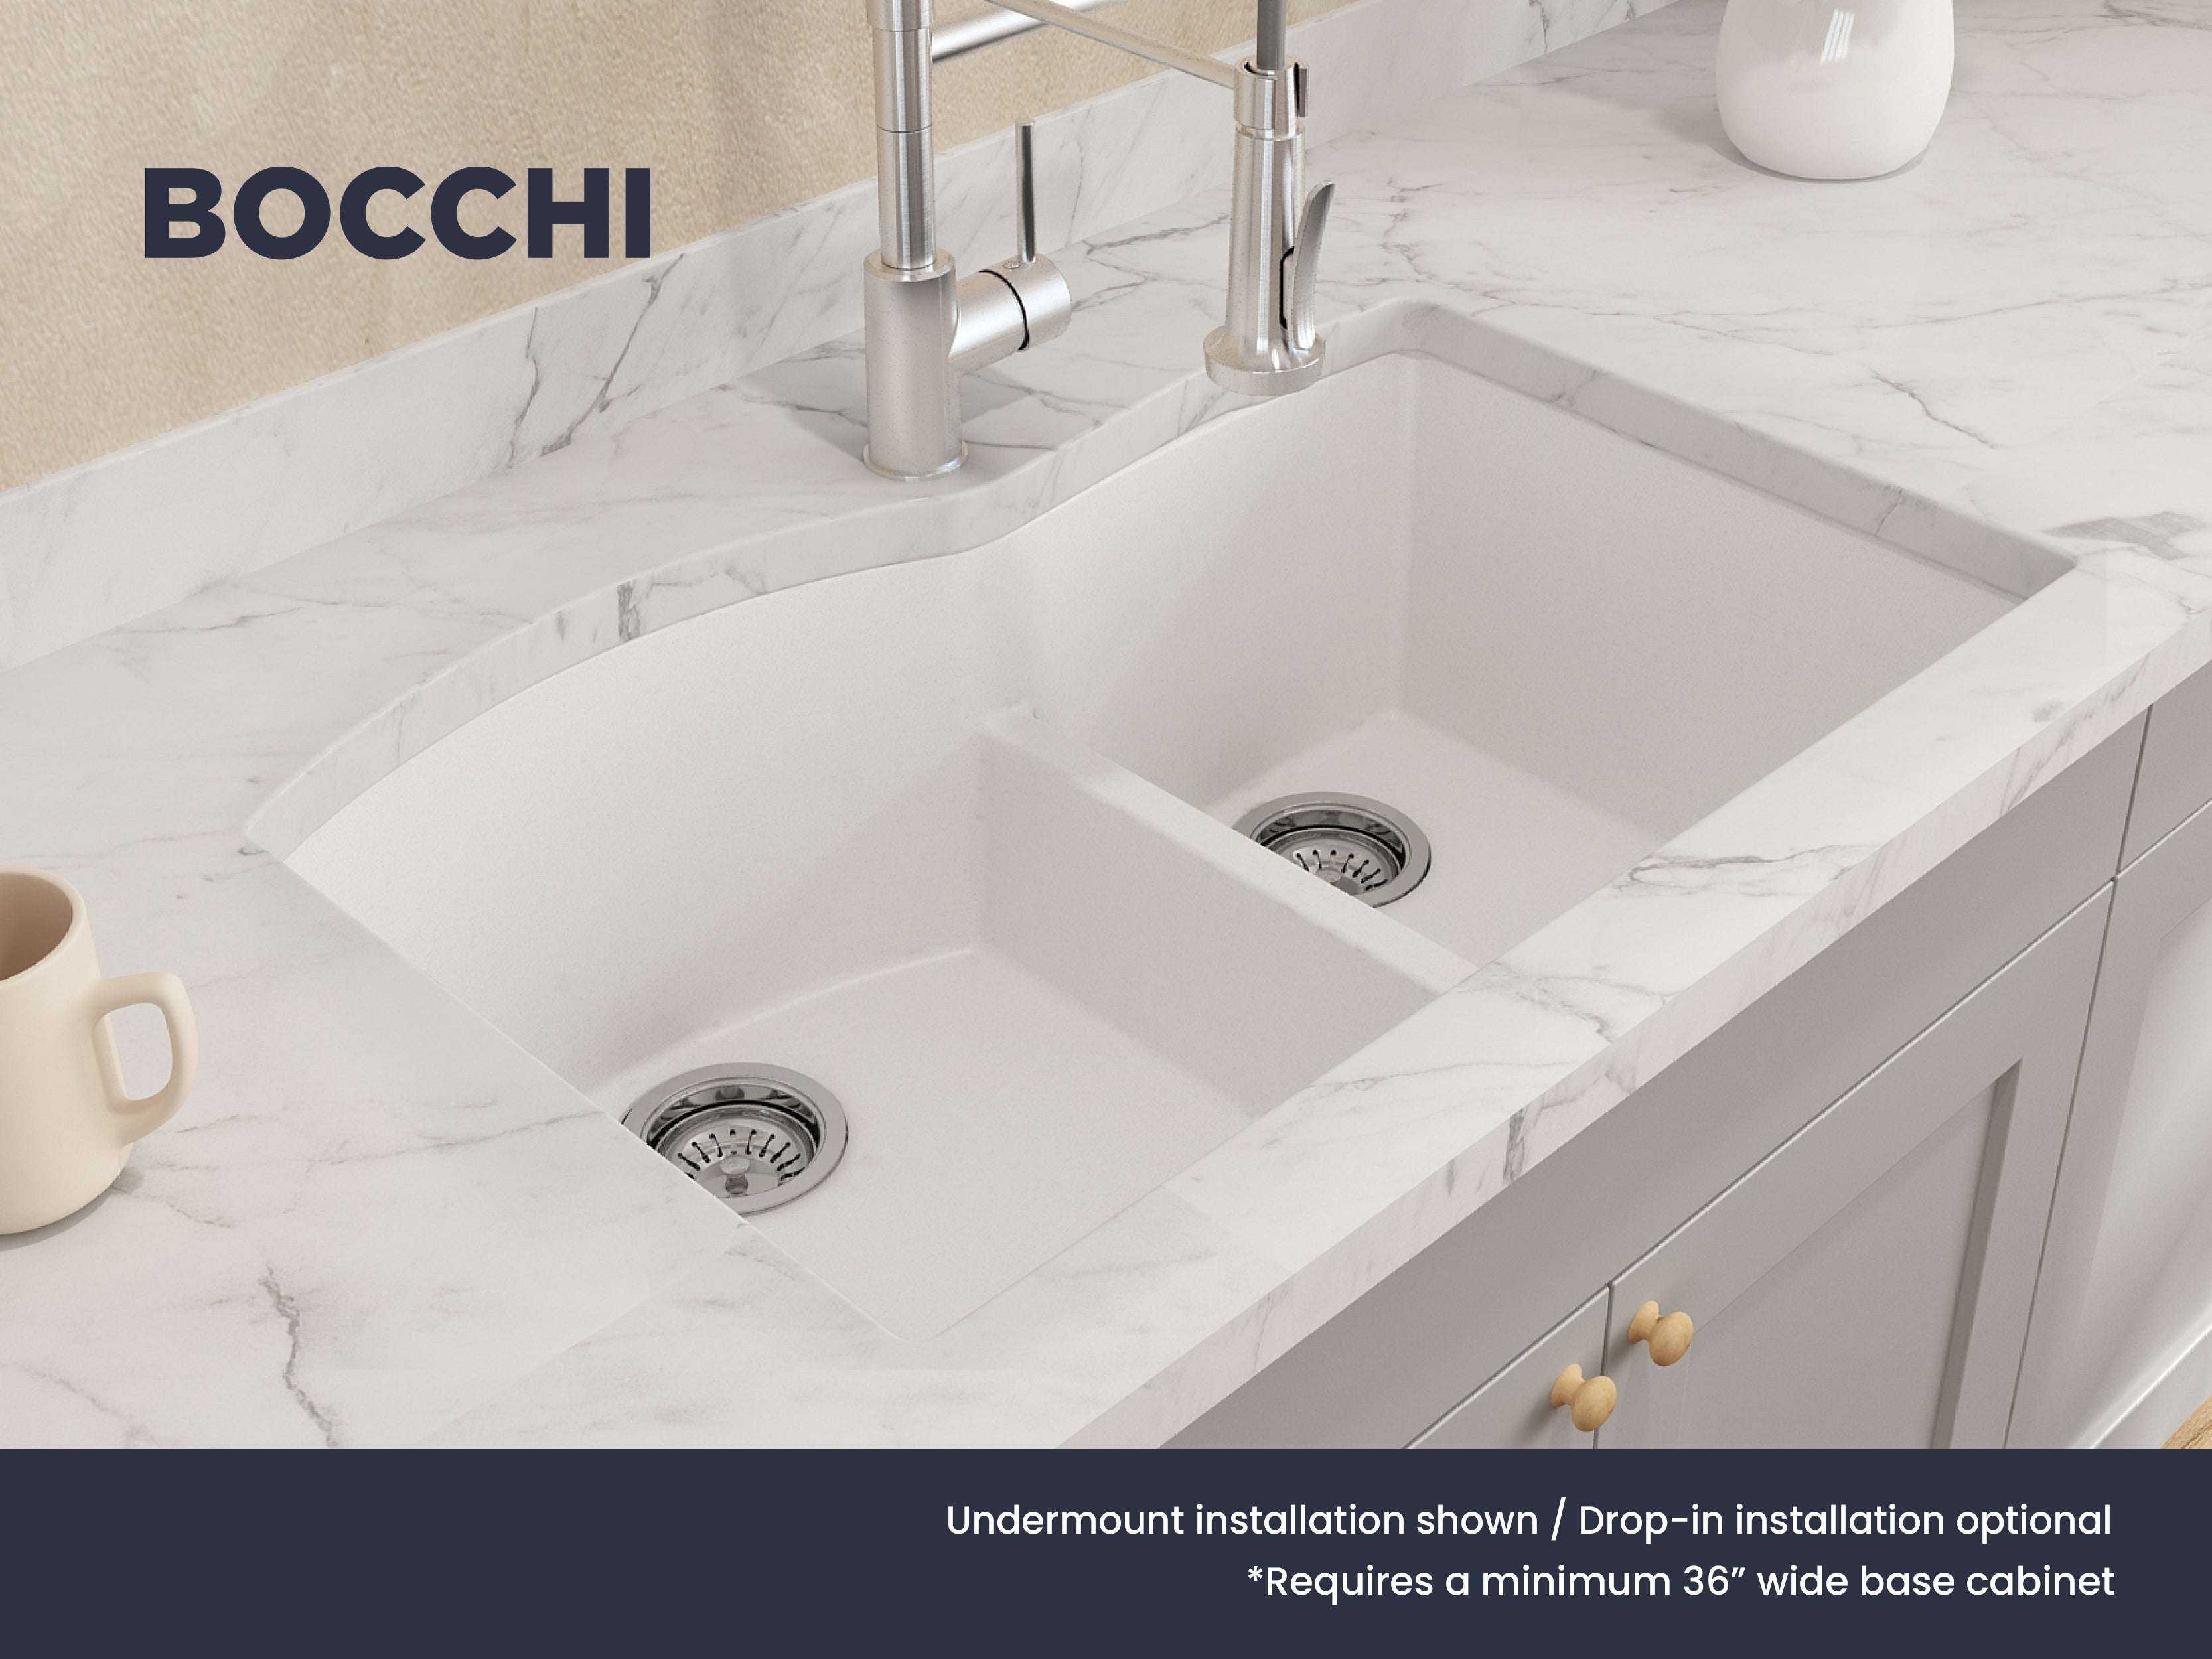 Bocchi 33" Dual Mount Granite Composite 60/40 Double Bowl Sink In Milk White